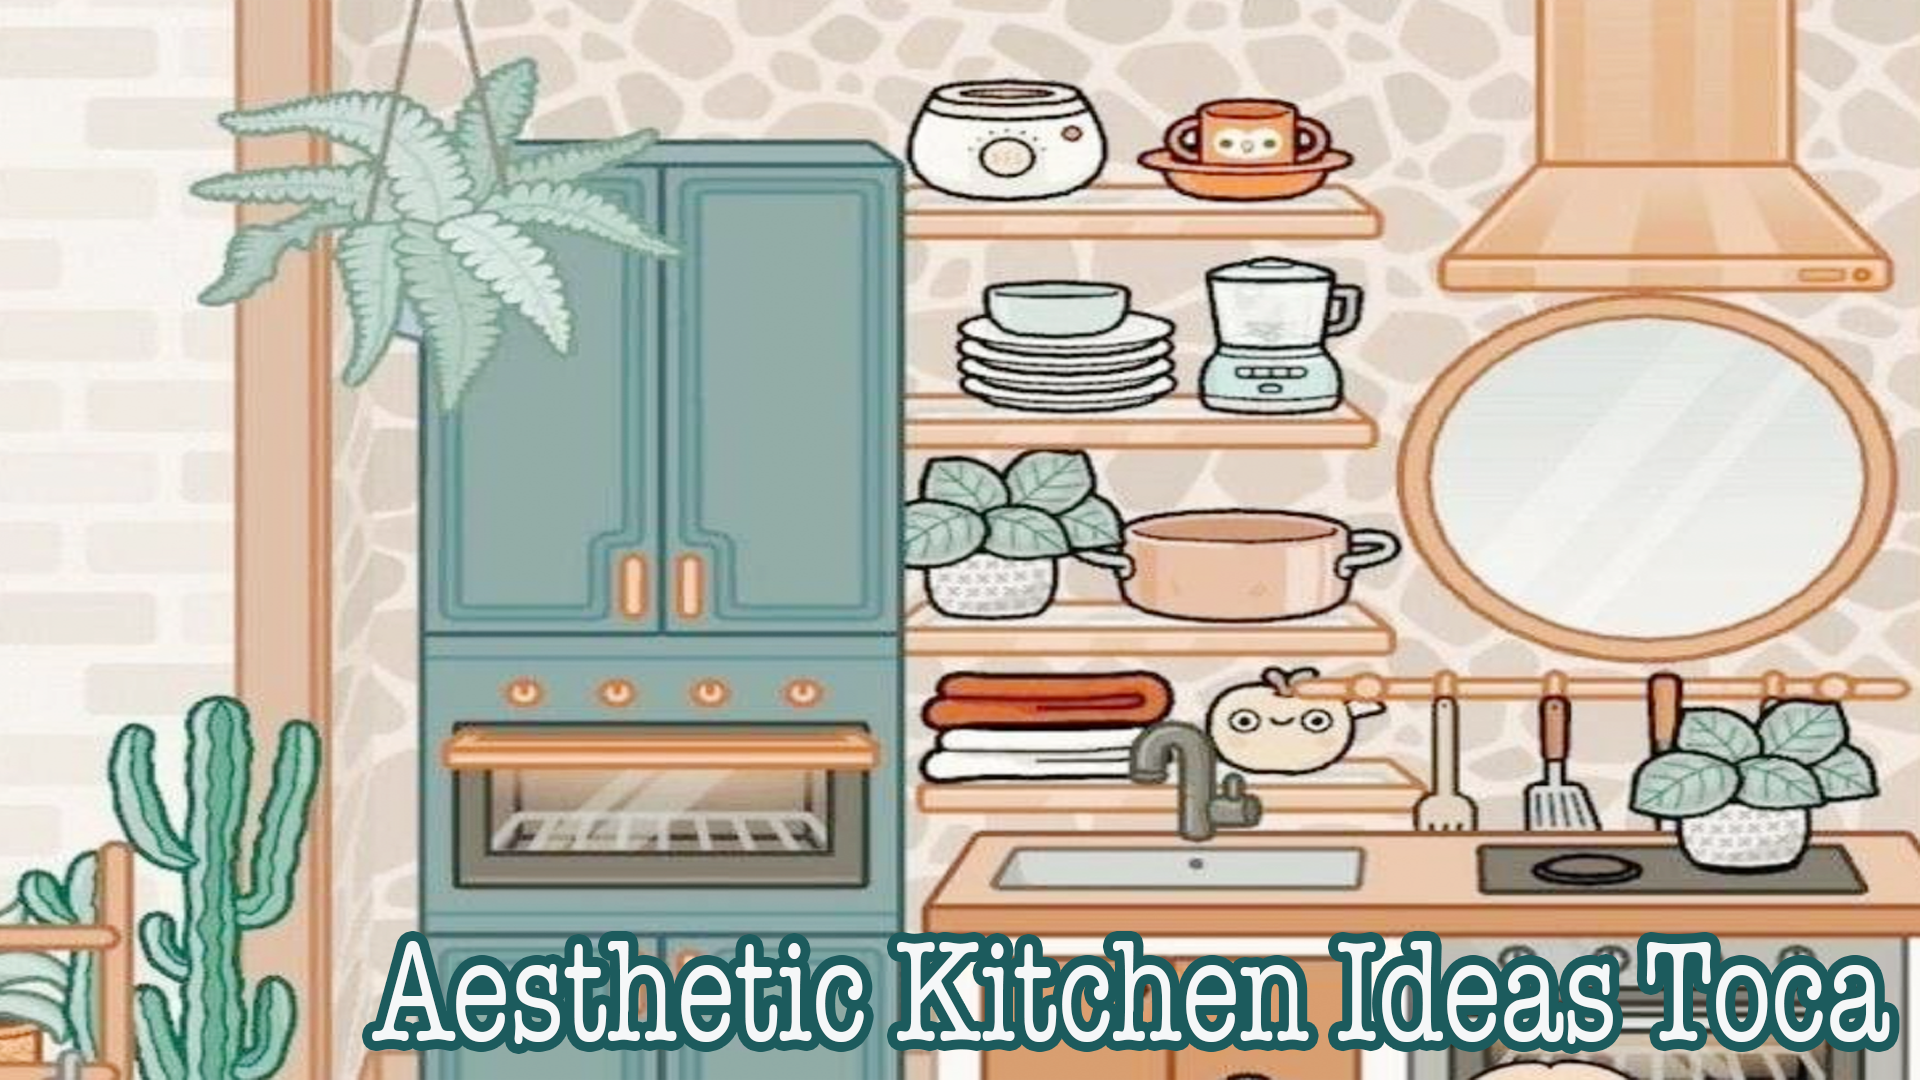 Toca App trên PC đã trang bị cho bạn những ý tưởng Aesthetic Kitchen vô cùng thú vị và đa dạng. Với giả lập chân thực, bạn có thể tạo ra không gian bếp của riêng mình với nhiều màu sắc, đồ vật và trang trí để thỏa sức sáng tạo. Hãy đến và khám phá Toca App trên PC để tạo ra một không gian nấu ăn hoàn hảo nhất!